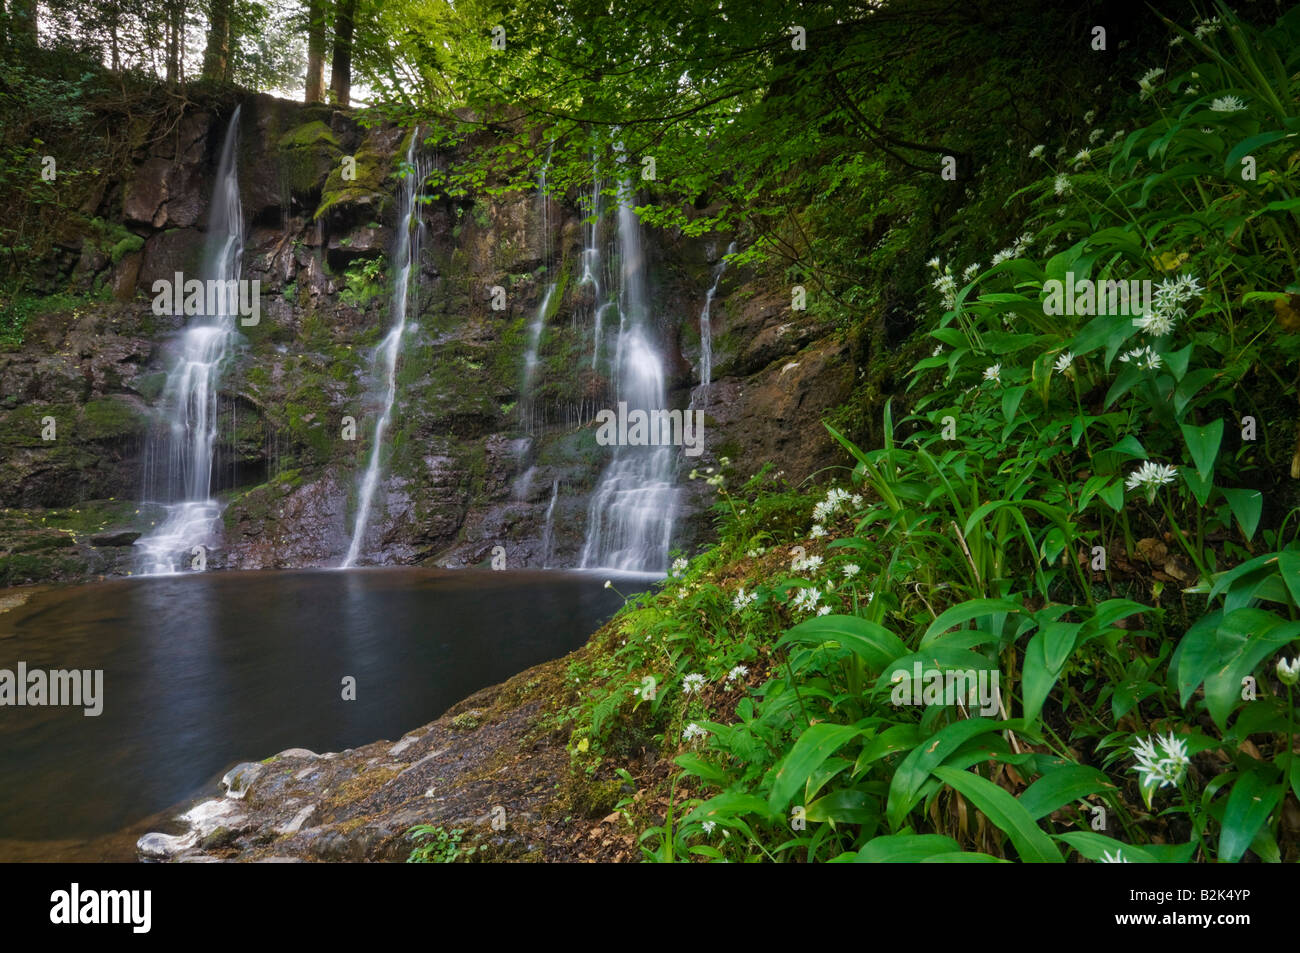 Na Ess cascade Crub Glen Glenariff Forest Park près de Cushendall Ariff le comté d'Antrim en Irlande du Nord UK GB EU Europe Banque D'Images